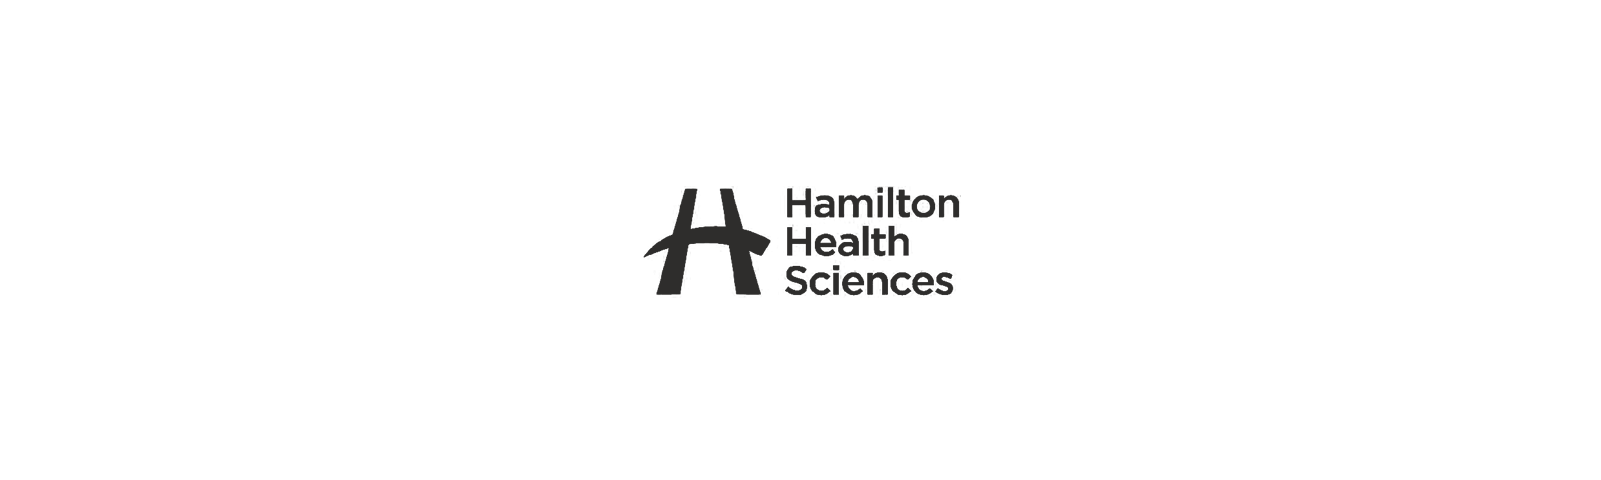 Hamilton-Health-Sciences-website